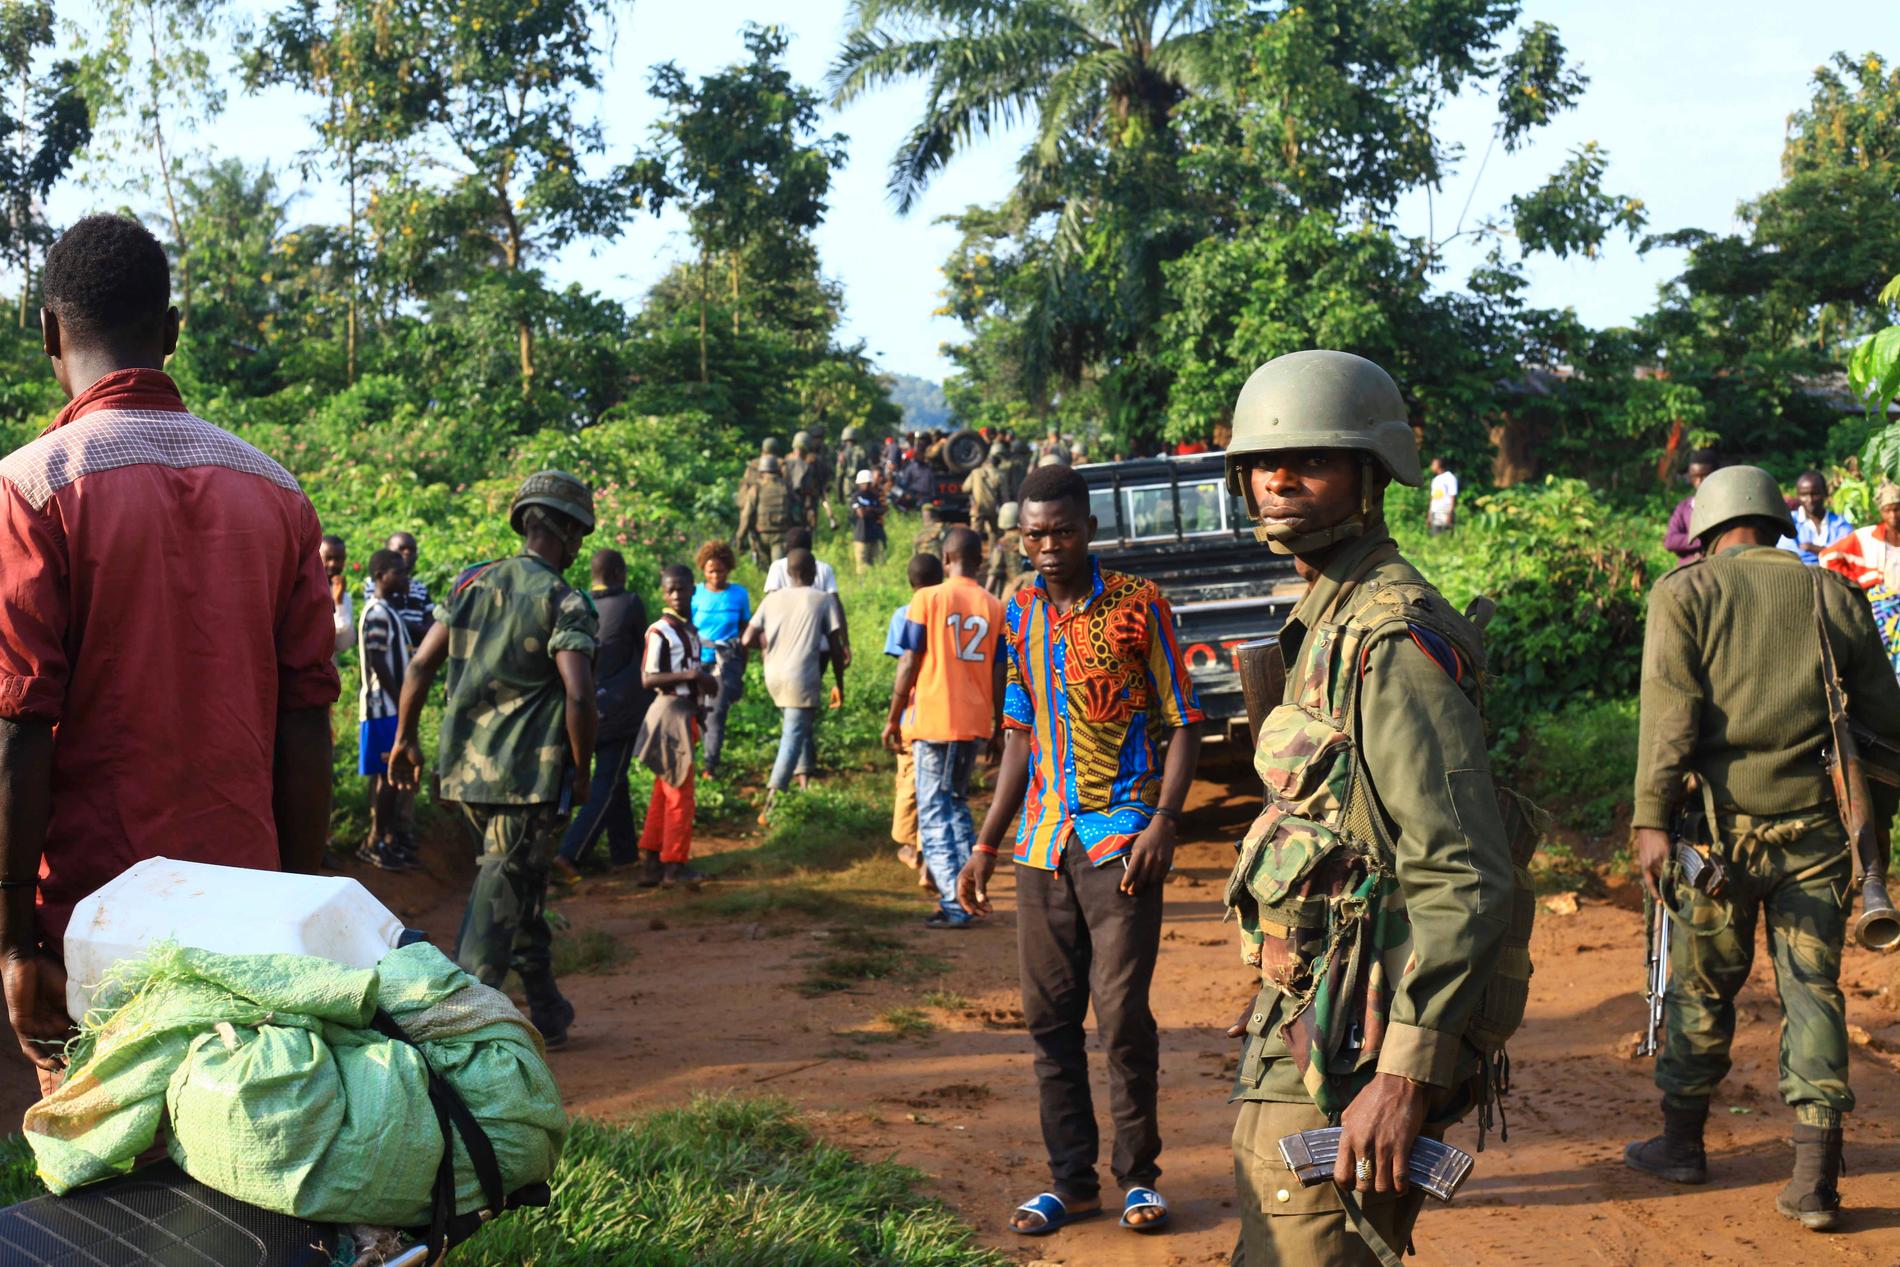 Regeringssoldater patrullerar nära staden Beni i östra Kongo-Kinshasa sedan den extrema jihadistgruppen ADF dödat civila i området. Arkivbild.